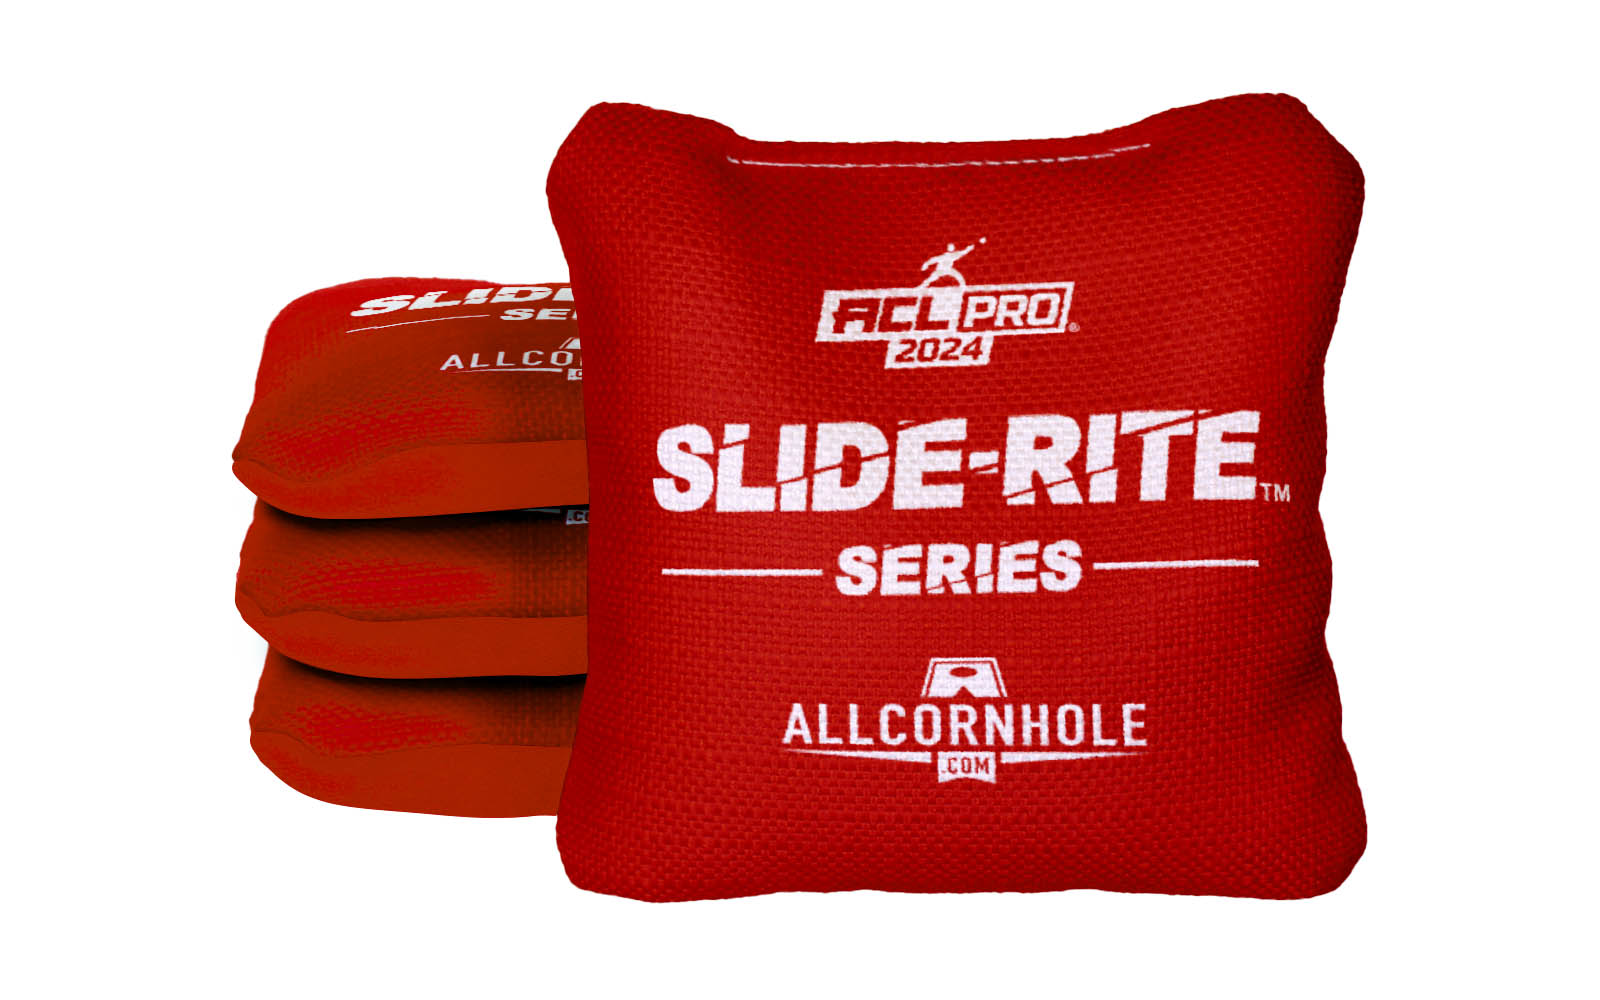 Officially Licensed Collegiate Cornhole Bags - AllCornhole Slide Rite - Set of 4 - University of Nebraska